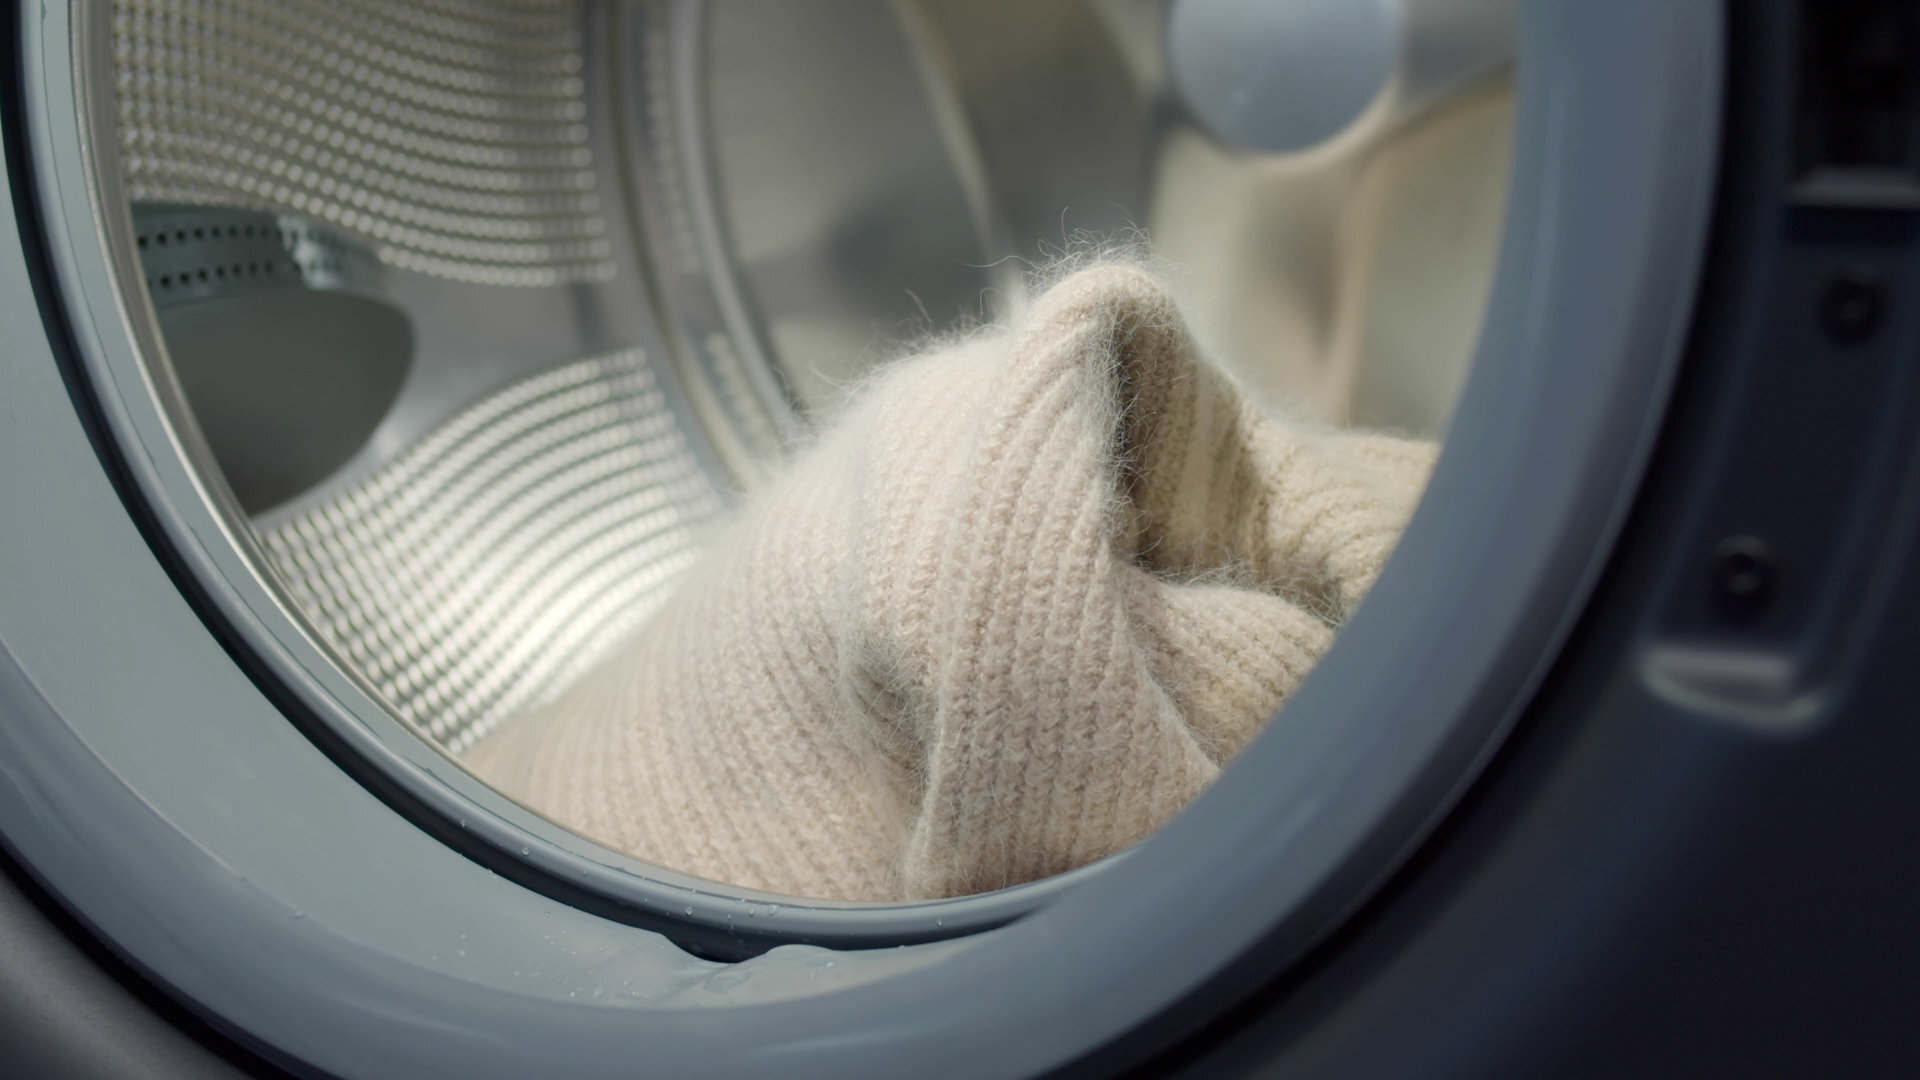 How To Fix An Unbalanced Washing Machine